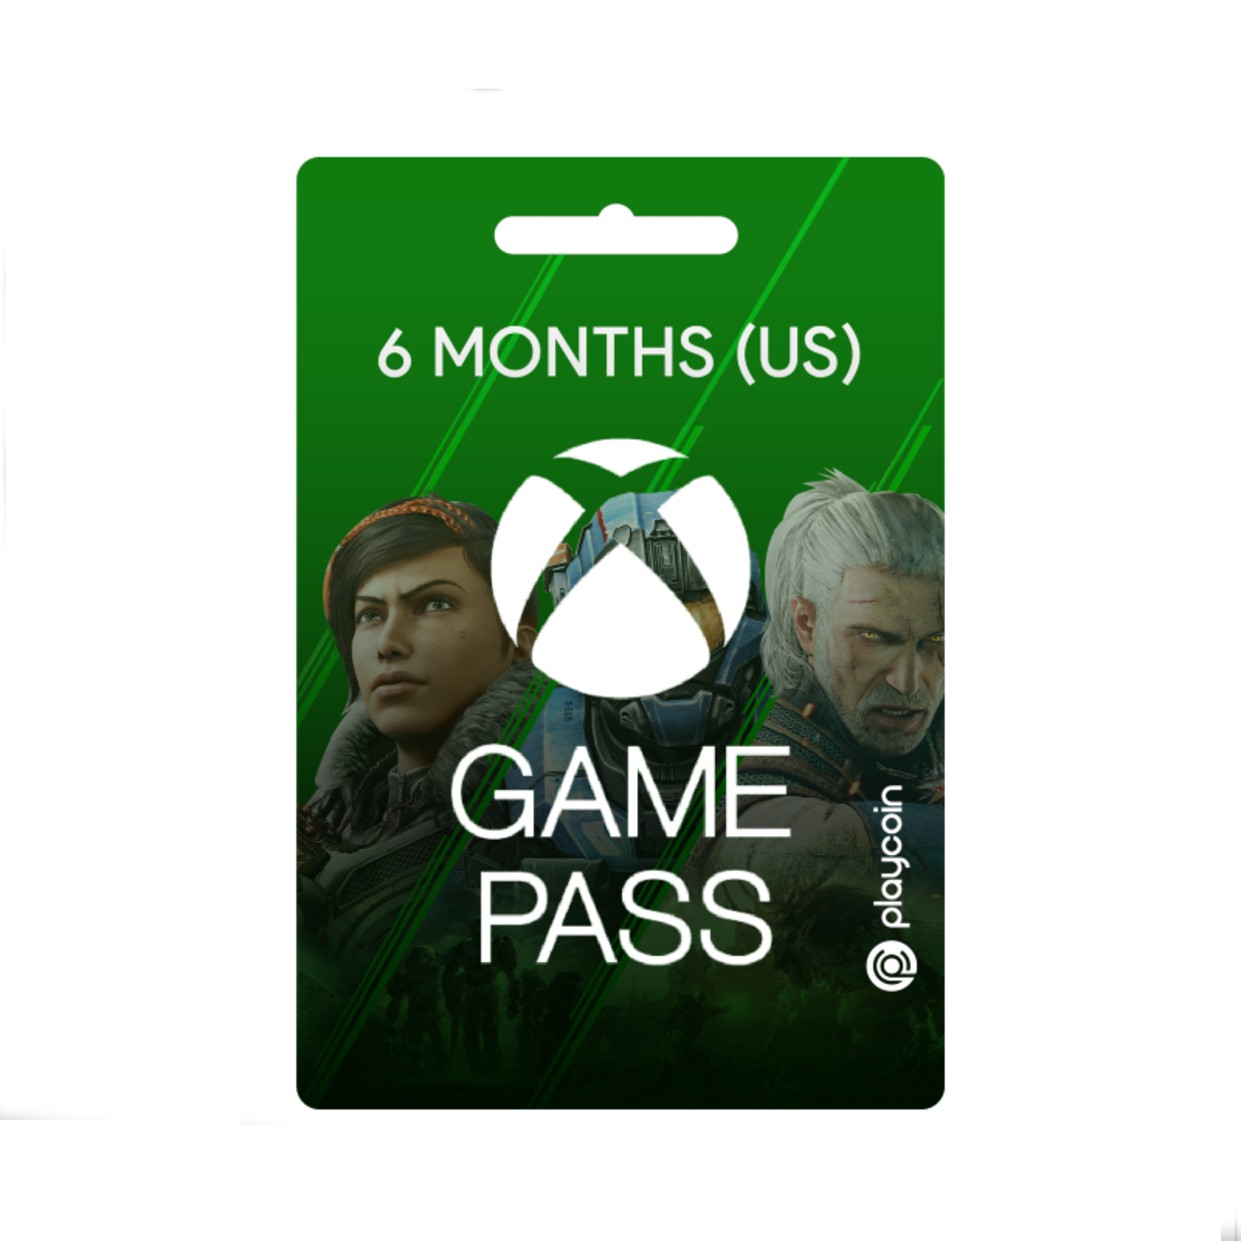 XBox Game Pass (US)